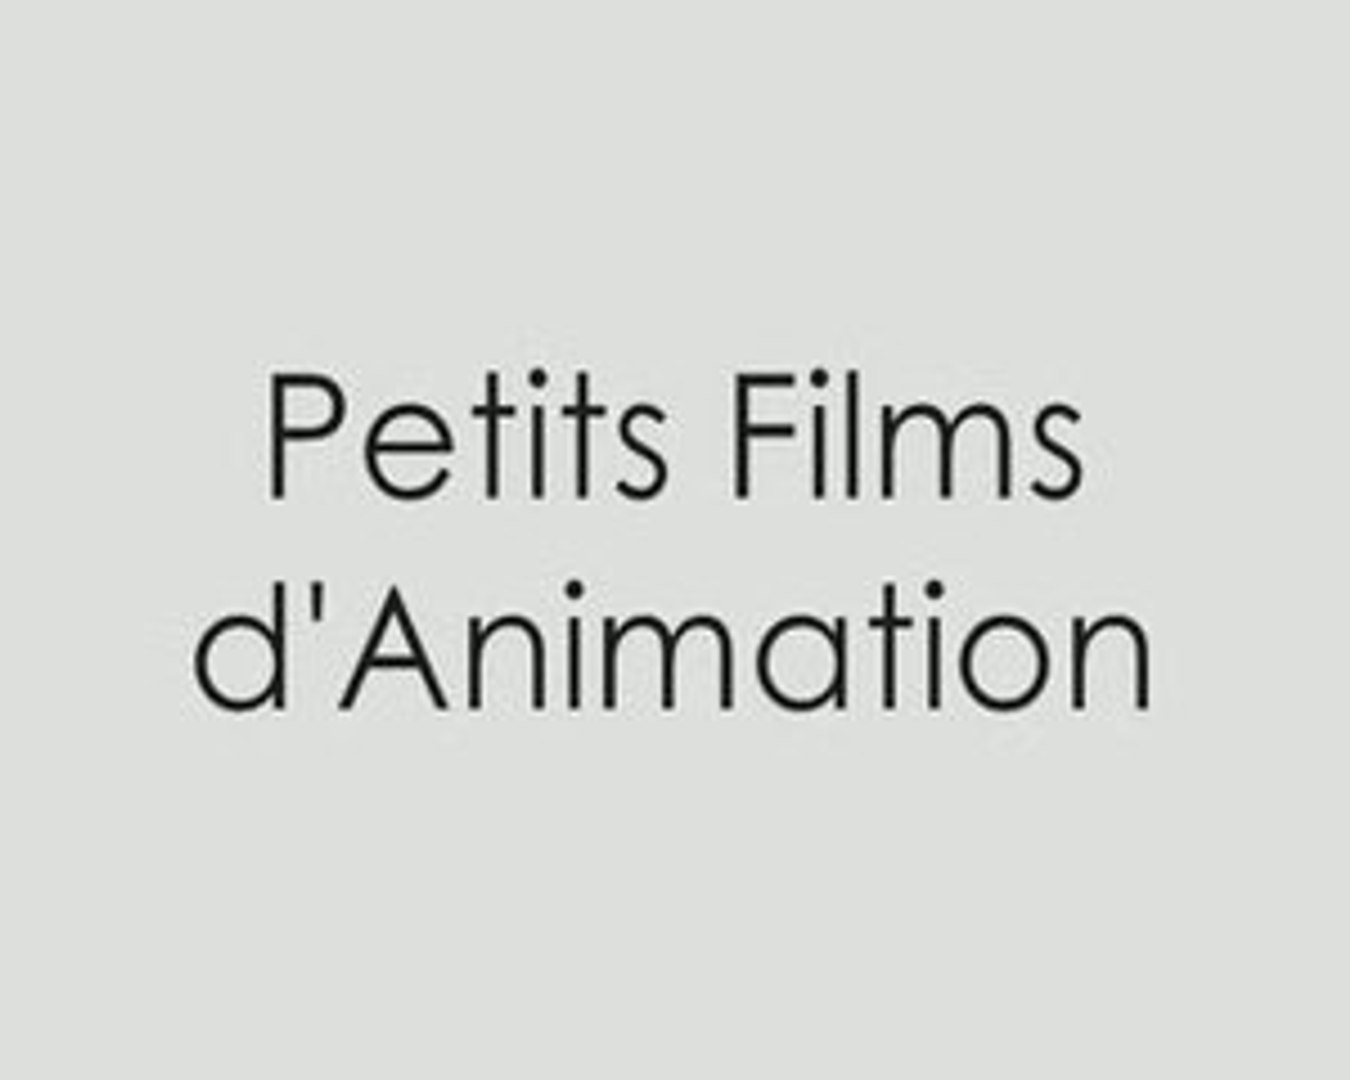 Petits films d'animation image par image